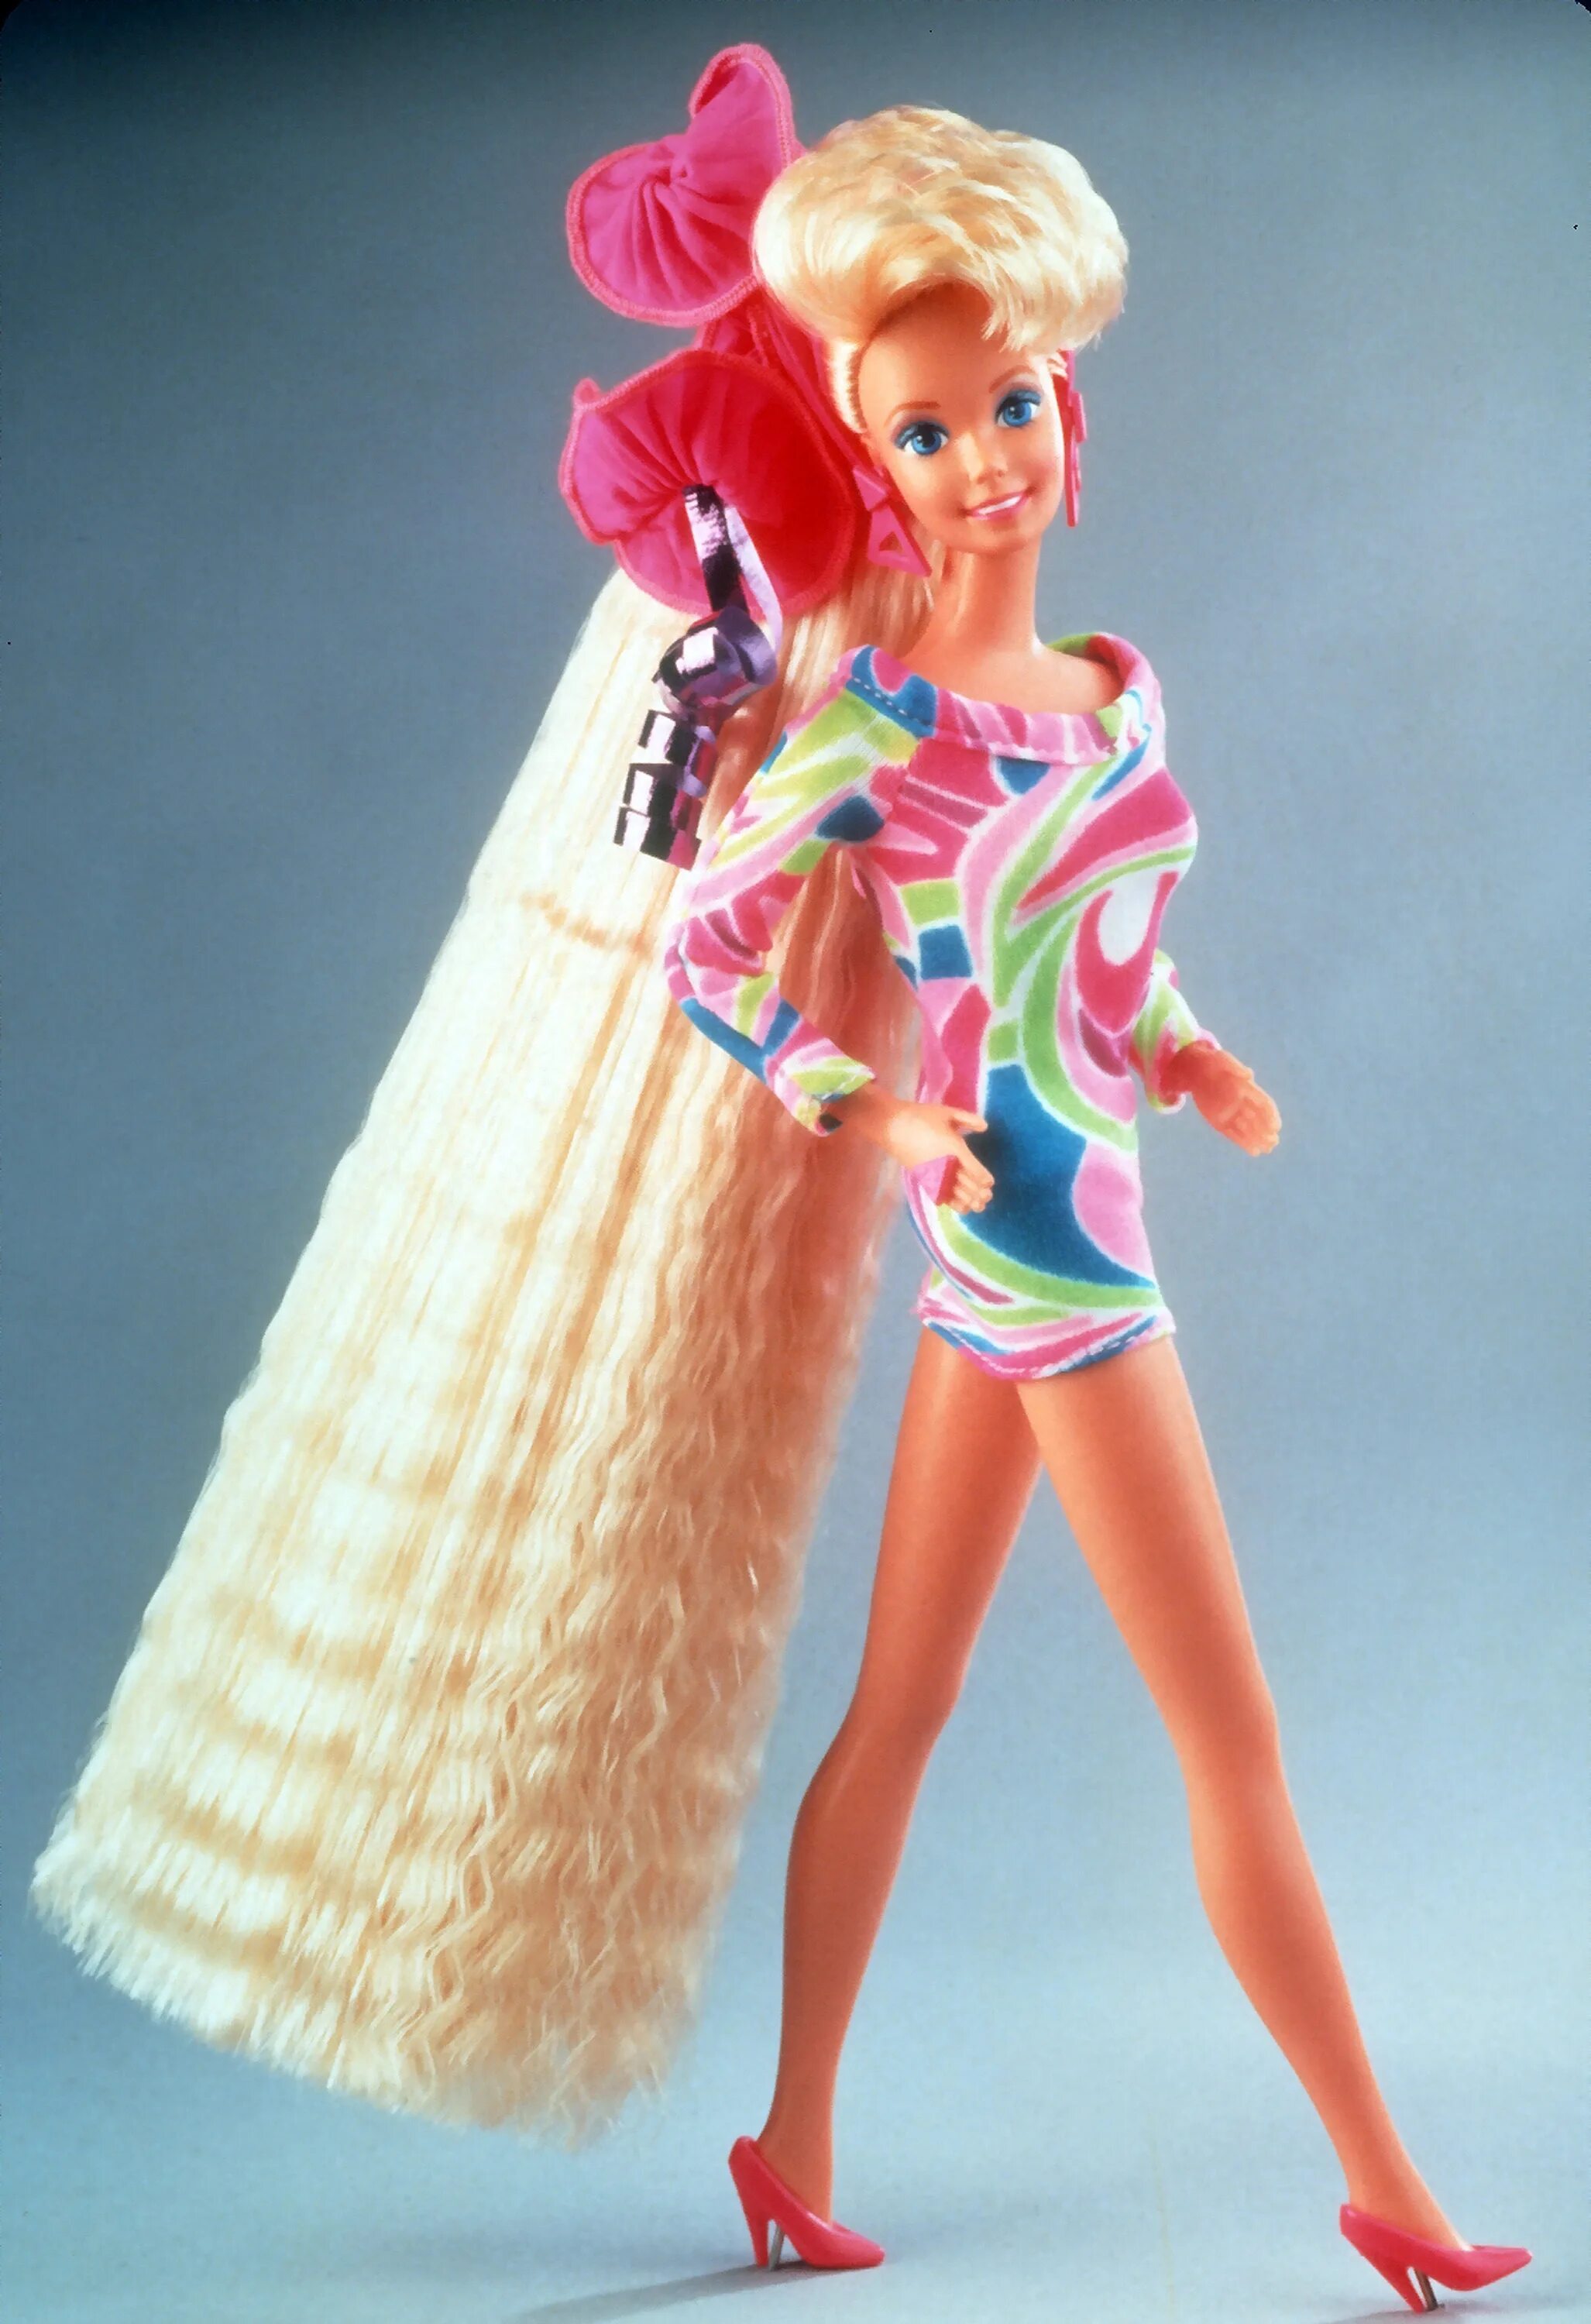 Барби тотали Хайр. Барби totally hair. Кукла Барби тотали Хэир. Барби 90 тотали Хайр. Какие волосы были у куклы